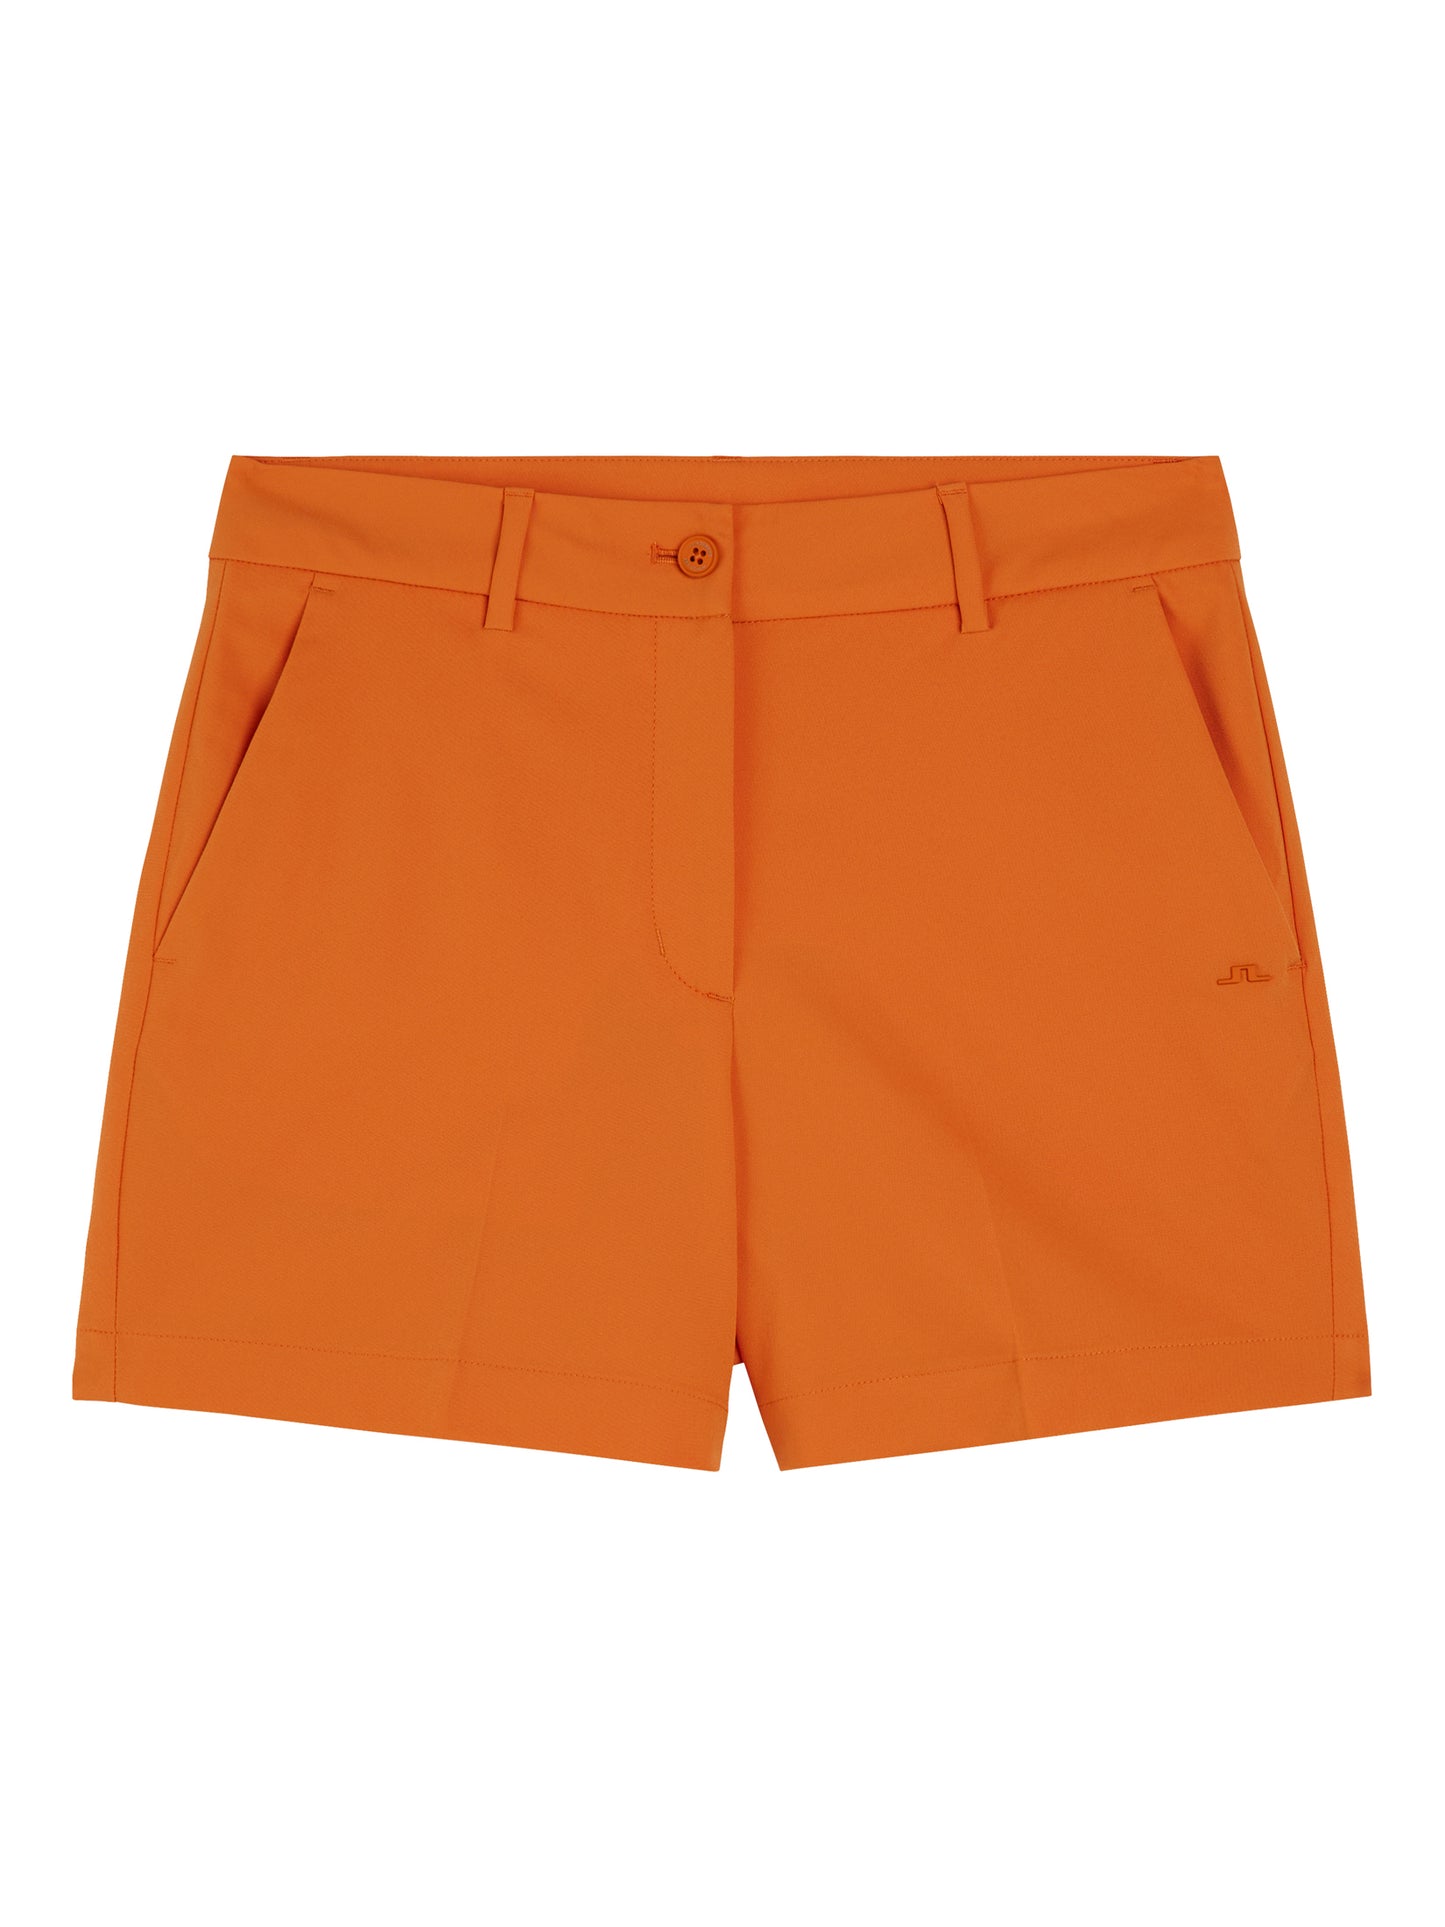 Gwen Shorts / Russet Orange